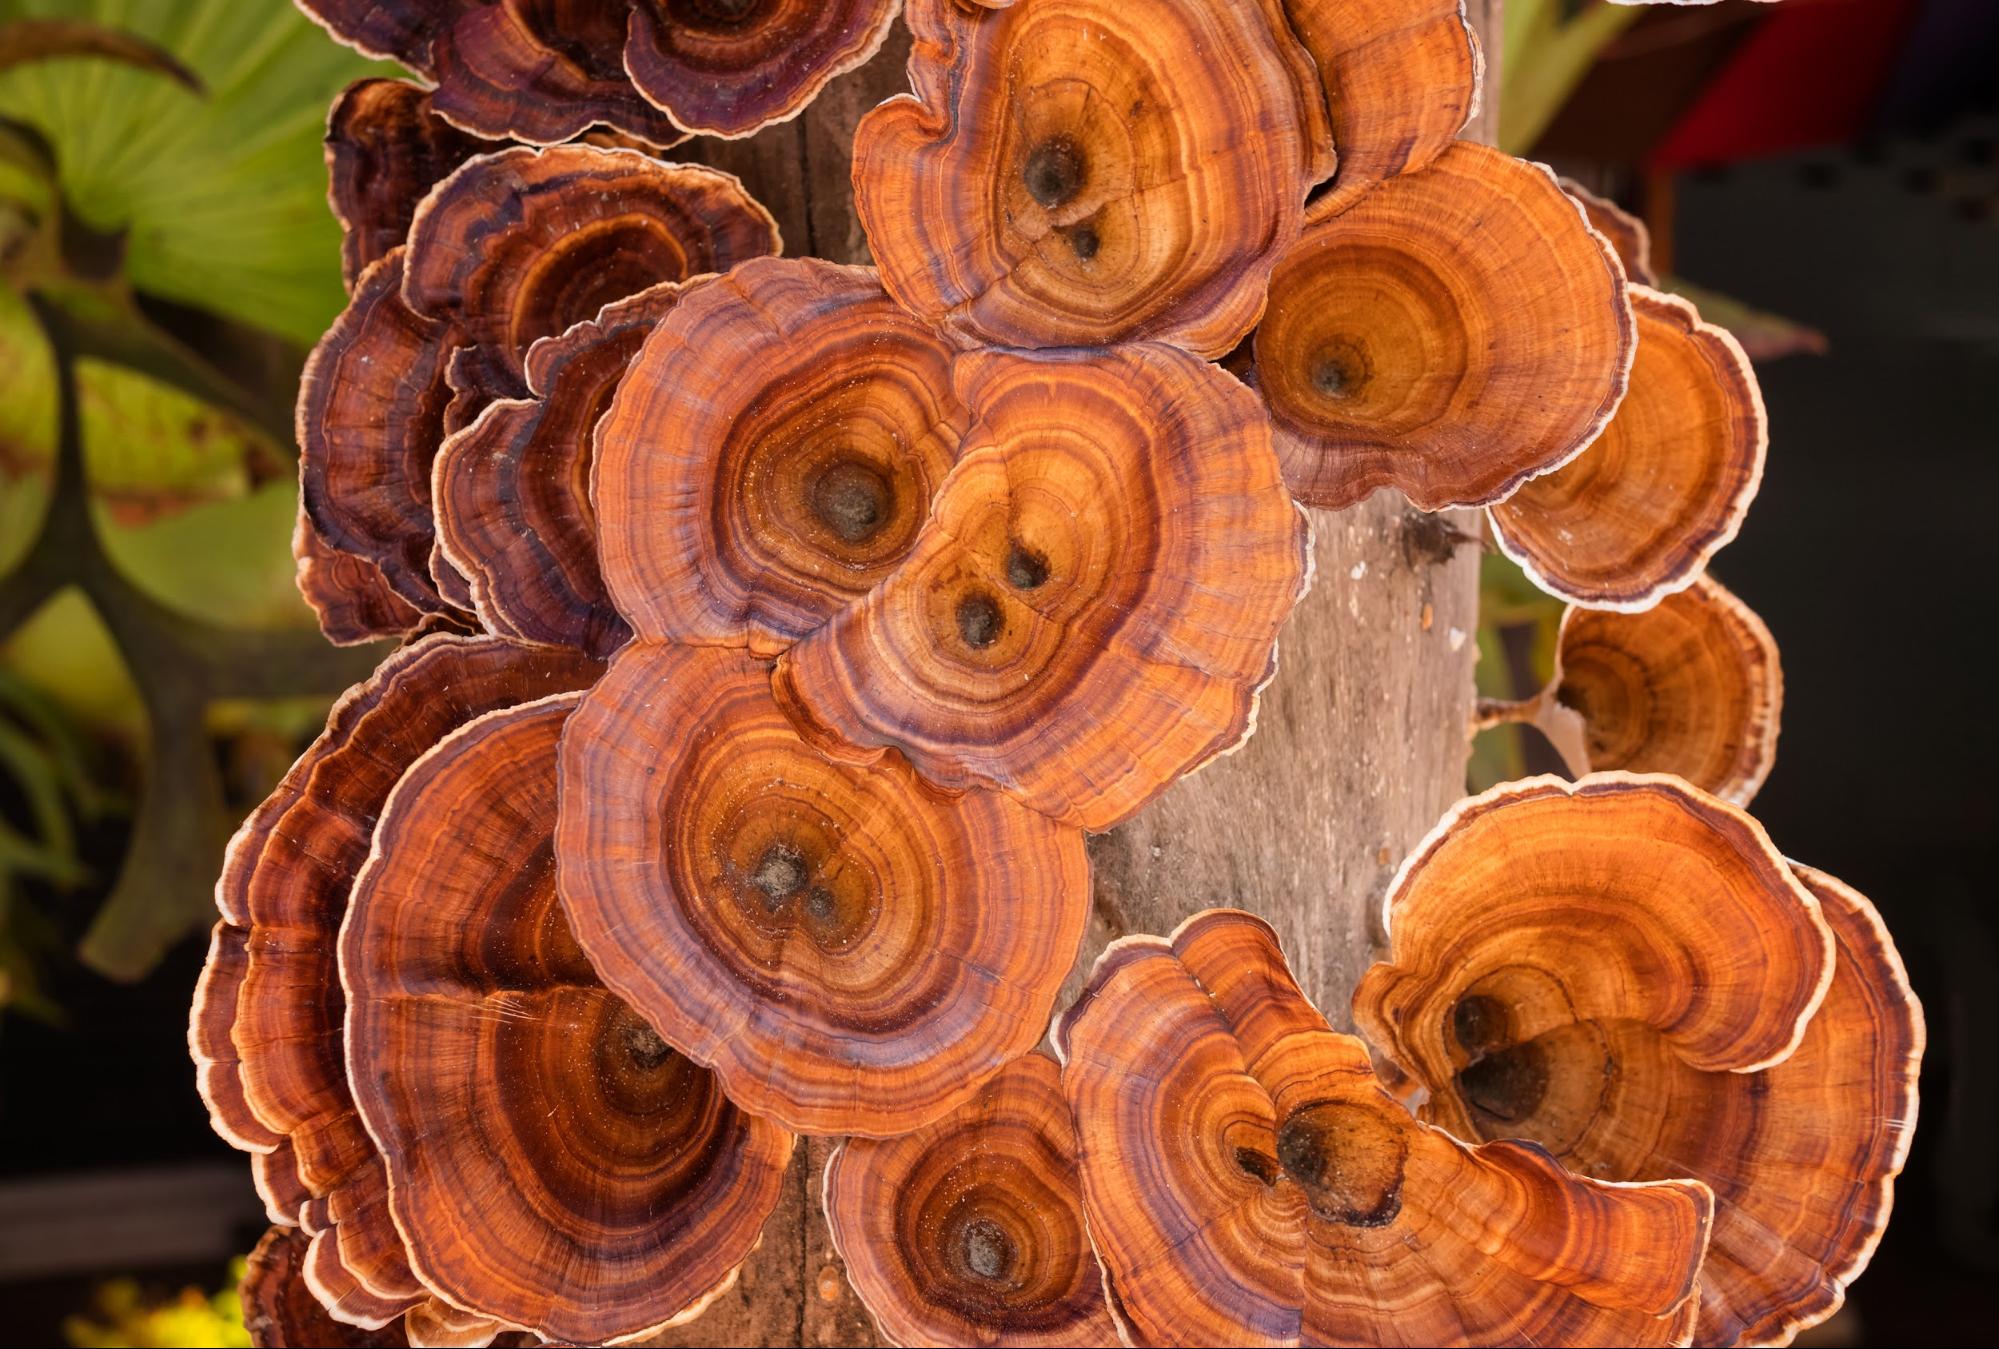 vibrant turkey tail mushrooms growing on log